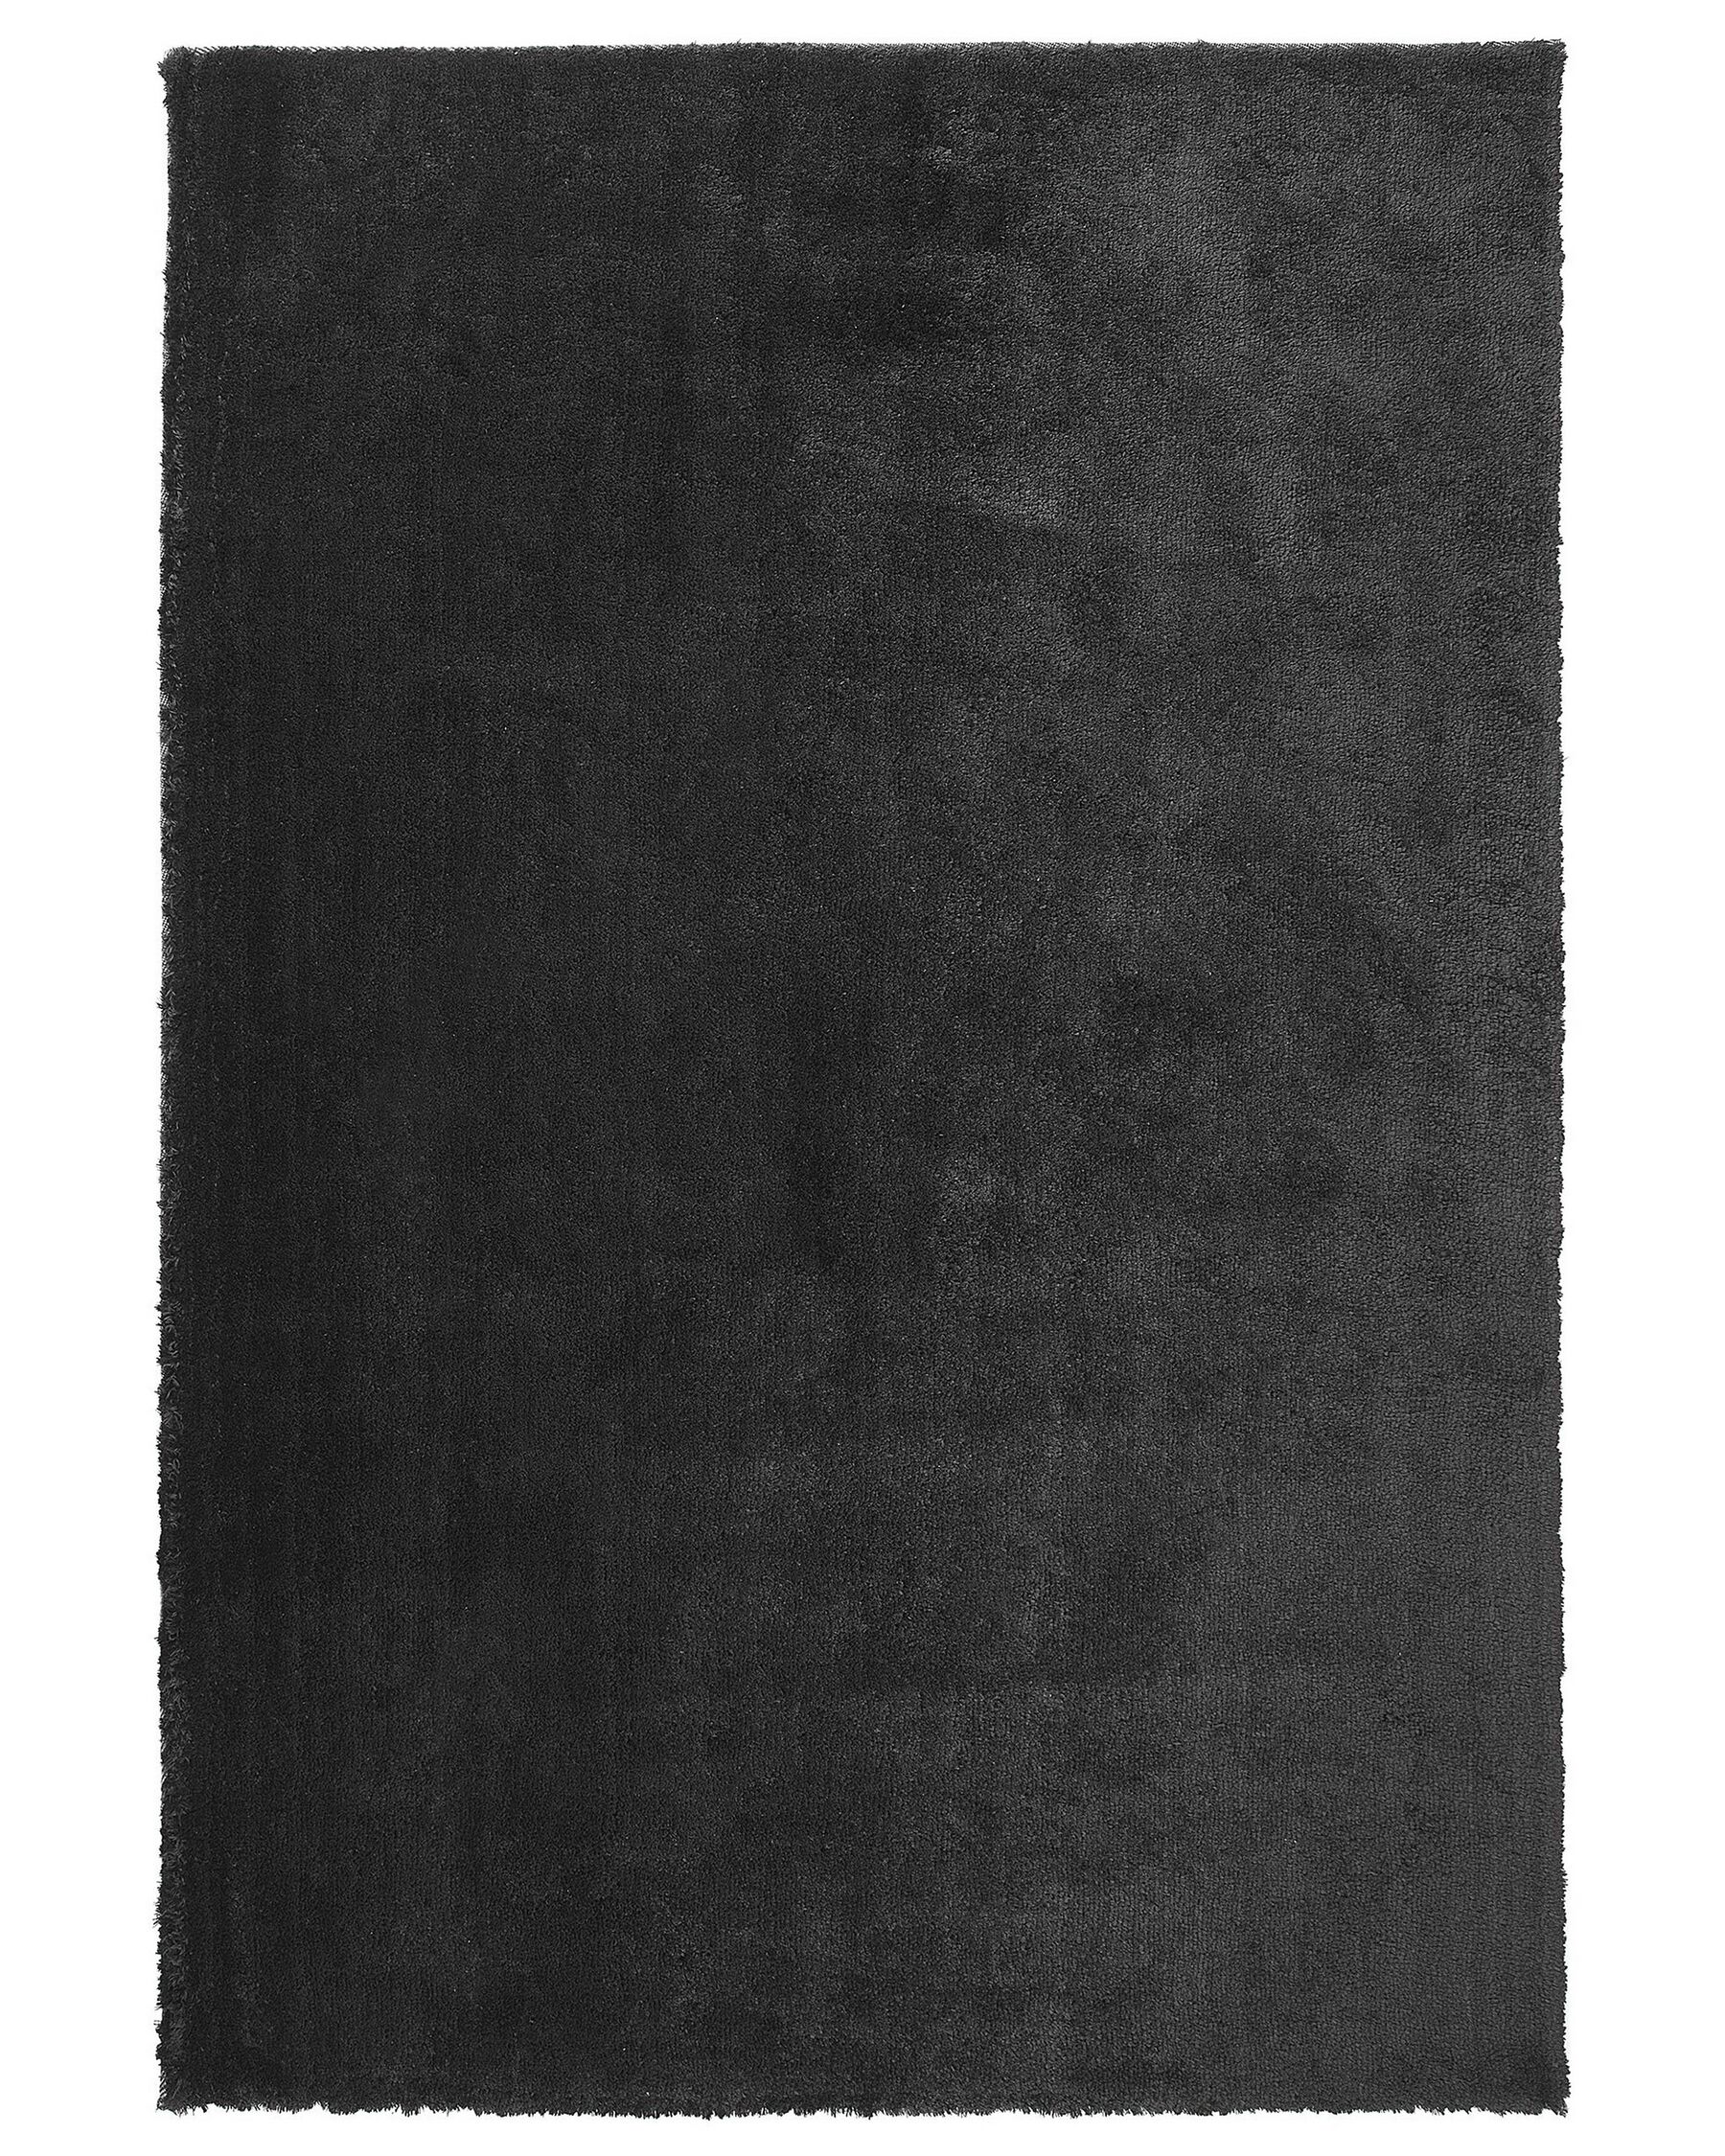 Teppich schwarz 160 x 230 cm Shaggy EVREN_758538